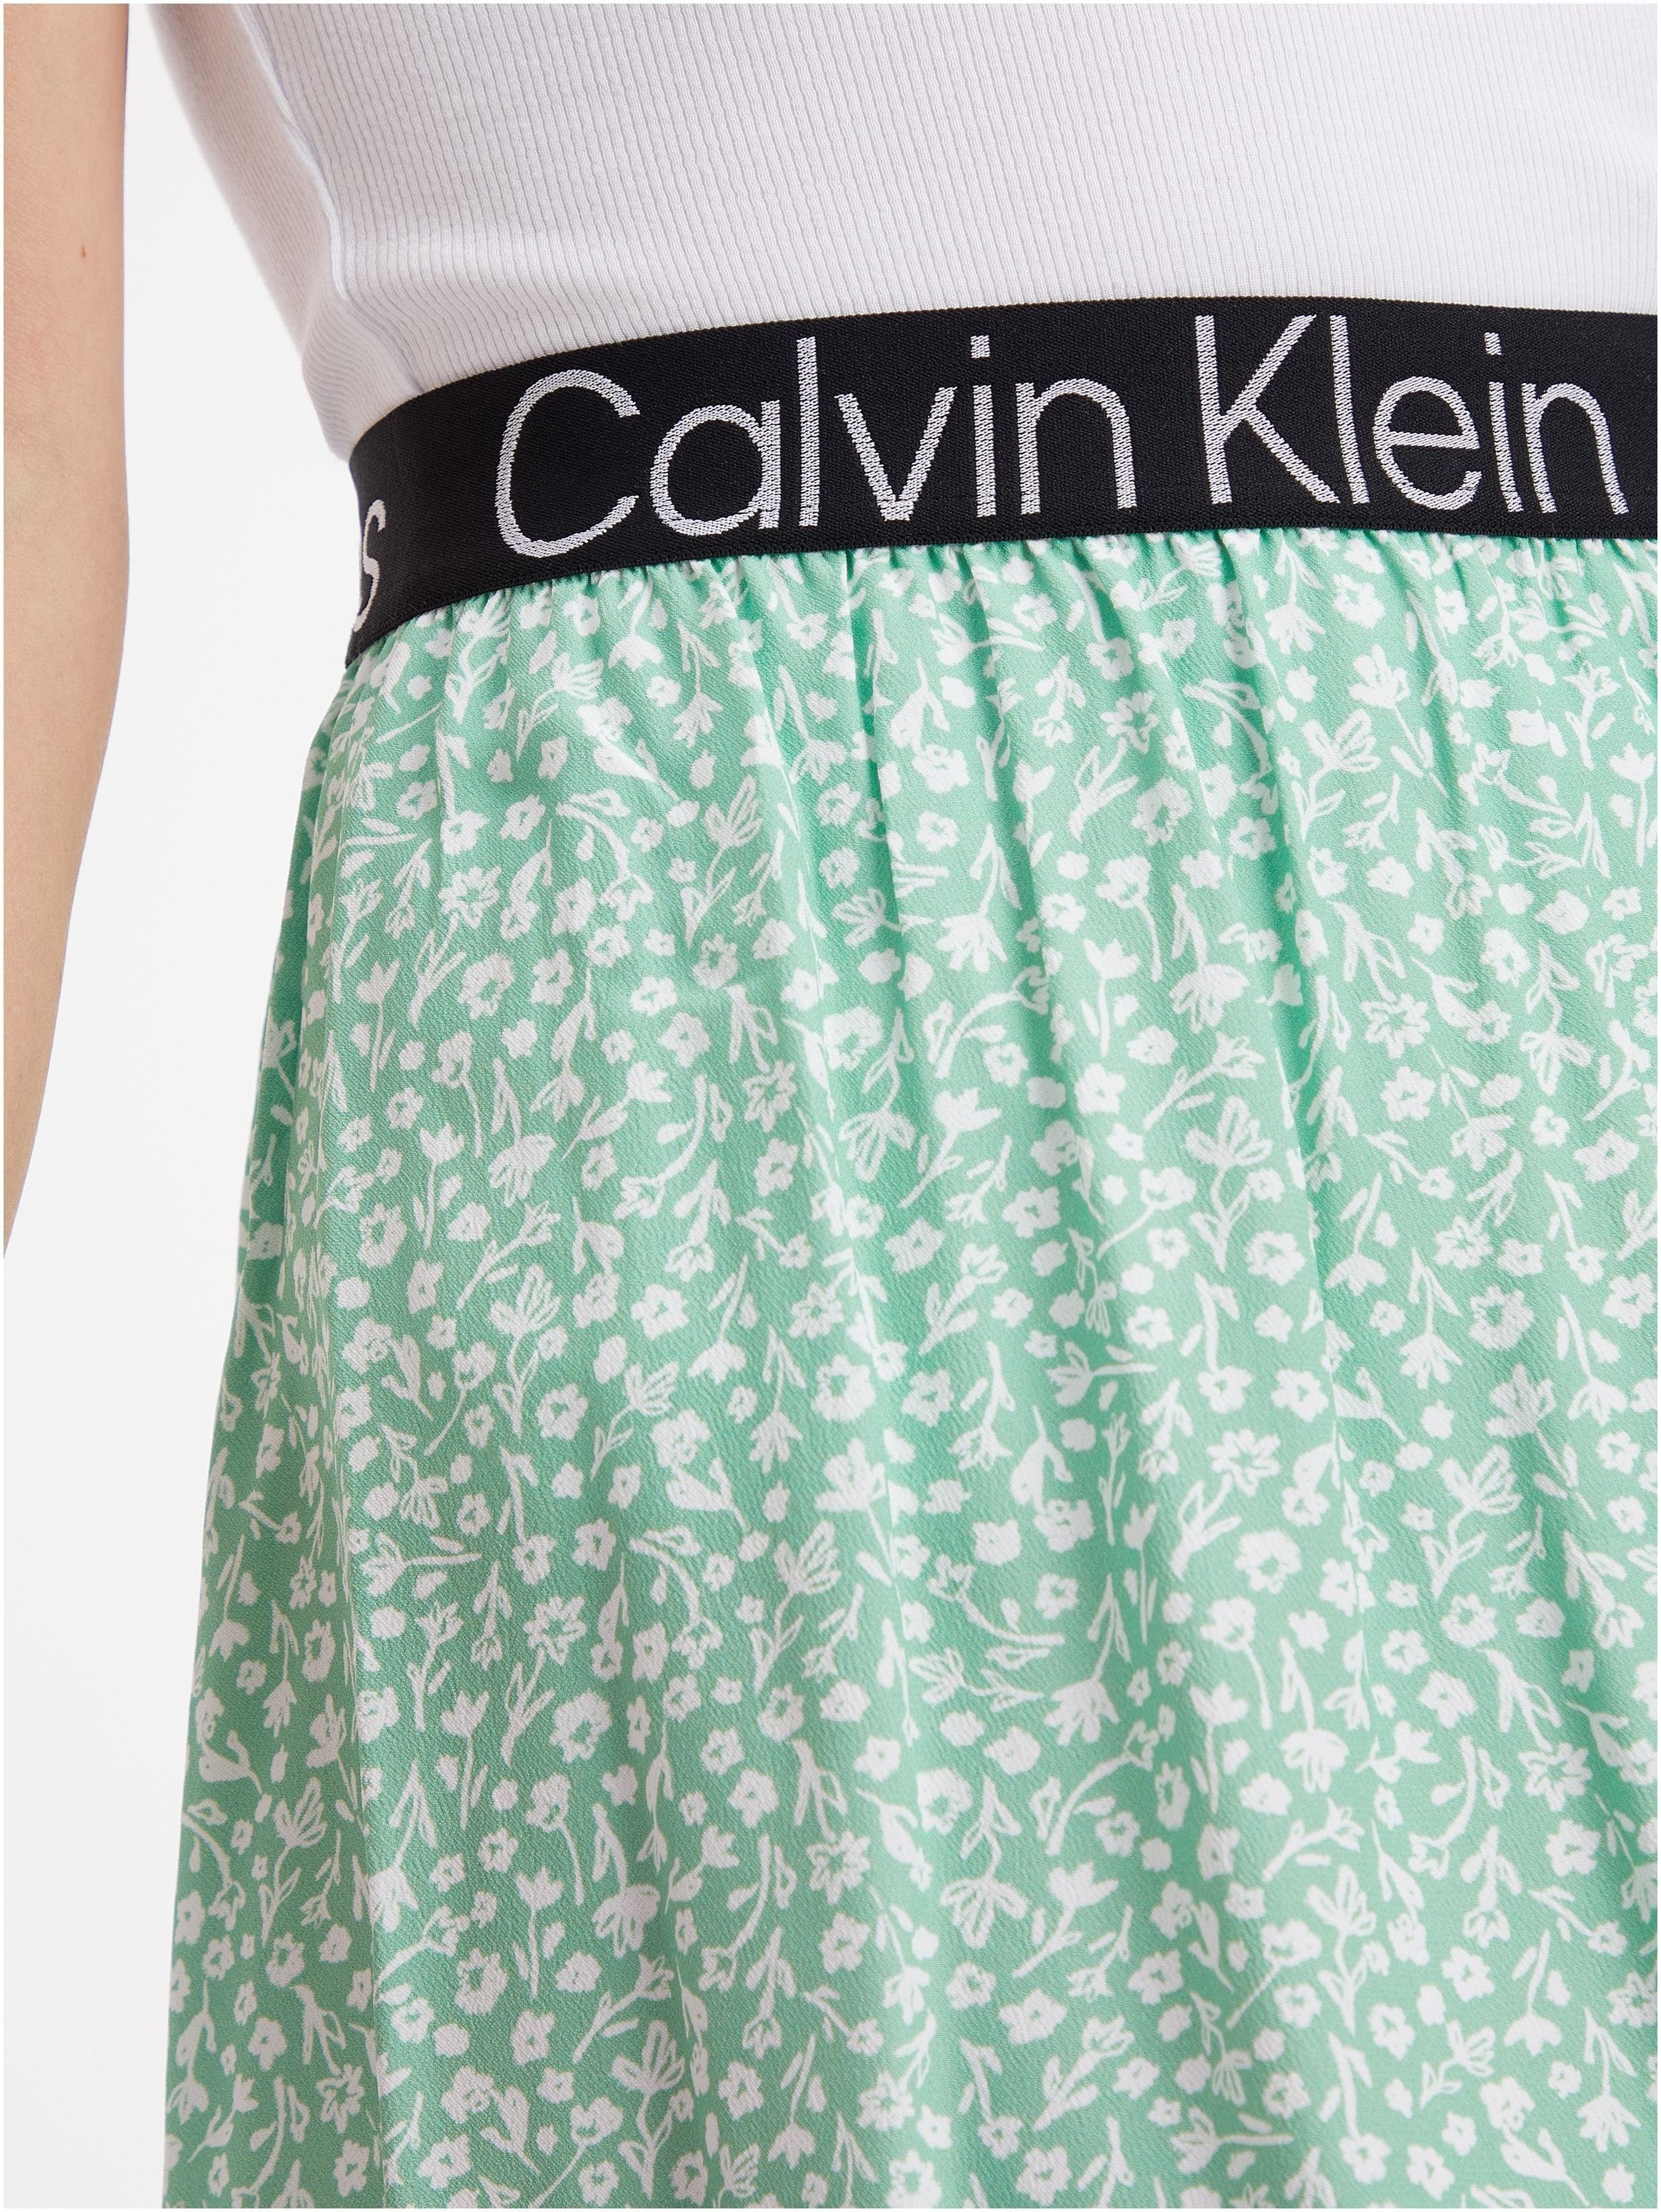 hellgrün, Jeans-Bund mit Klein Klein Calvin Jeans Minirock Calvin weiß elastischem